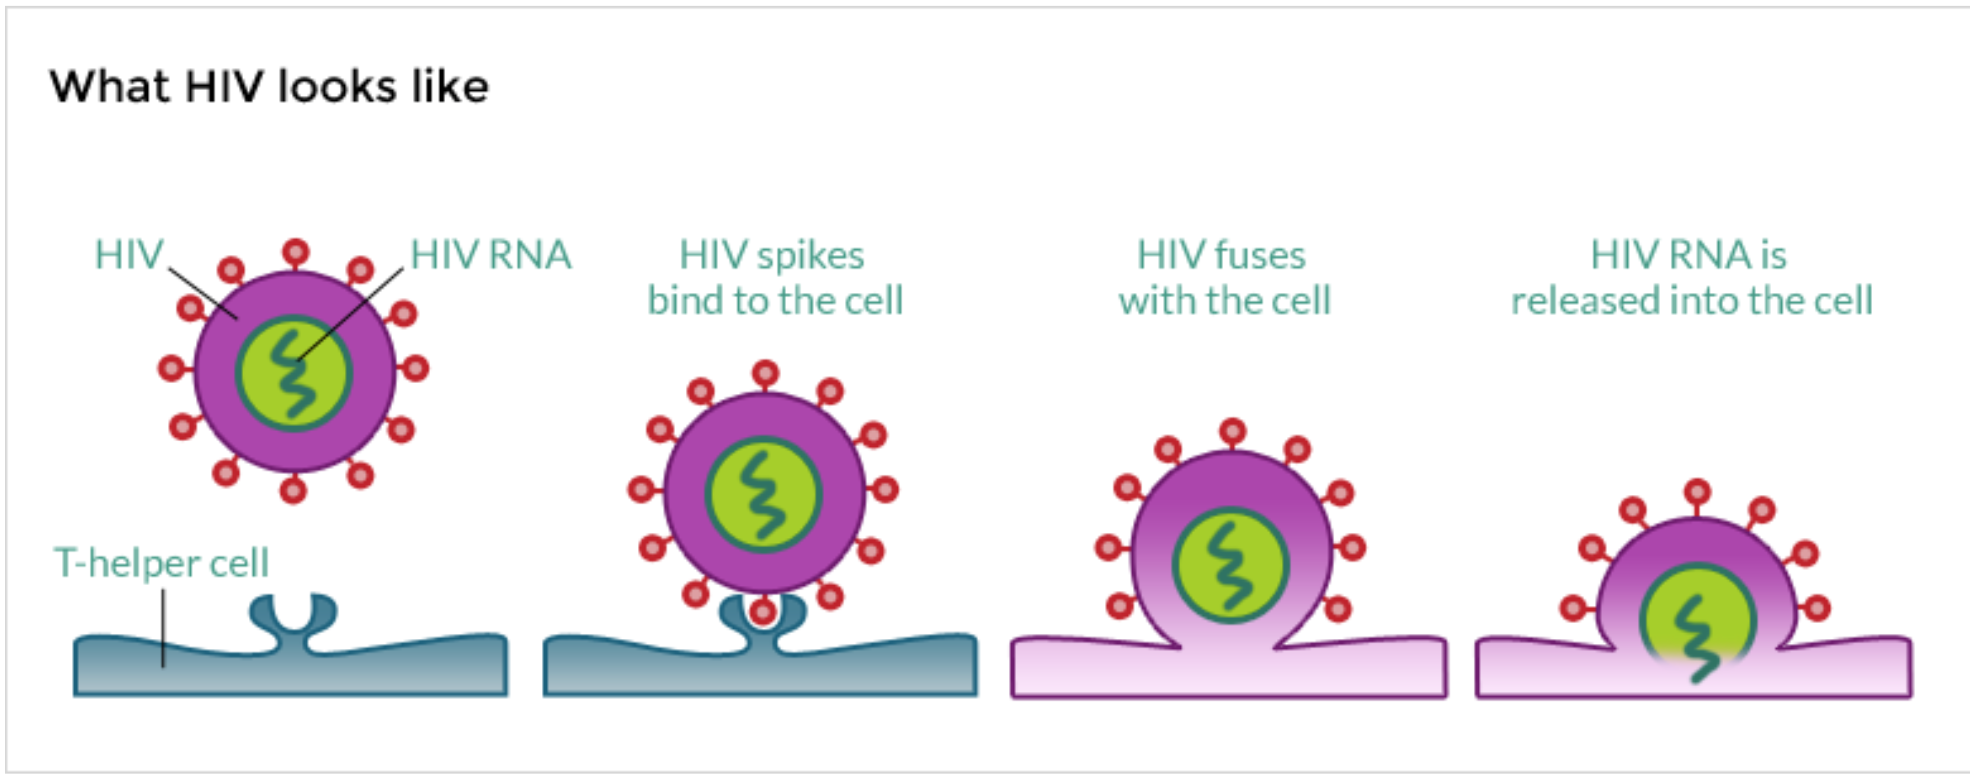 Стадии жизненного цикла ВИЧ. Стадии цикла развития вируса ВИЧ. Этапы жизненного цикла вируса иммунодефицита человека. Этапы жизненного цикла вируса иммунодефицита человека ВИЧ.